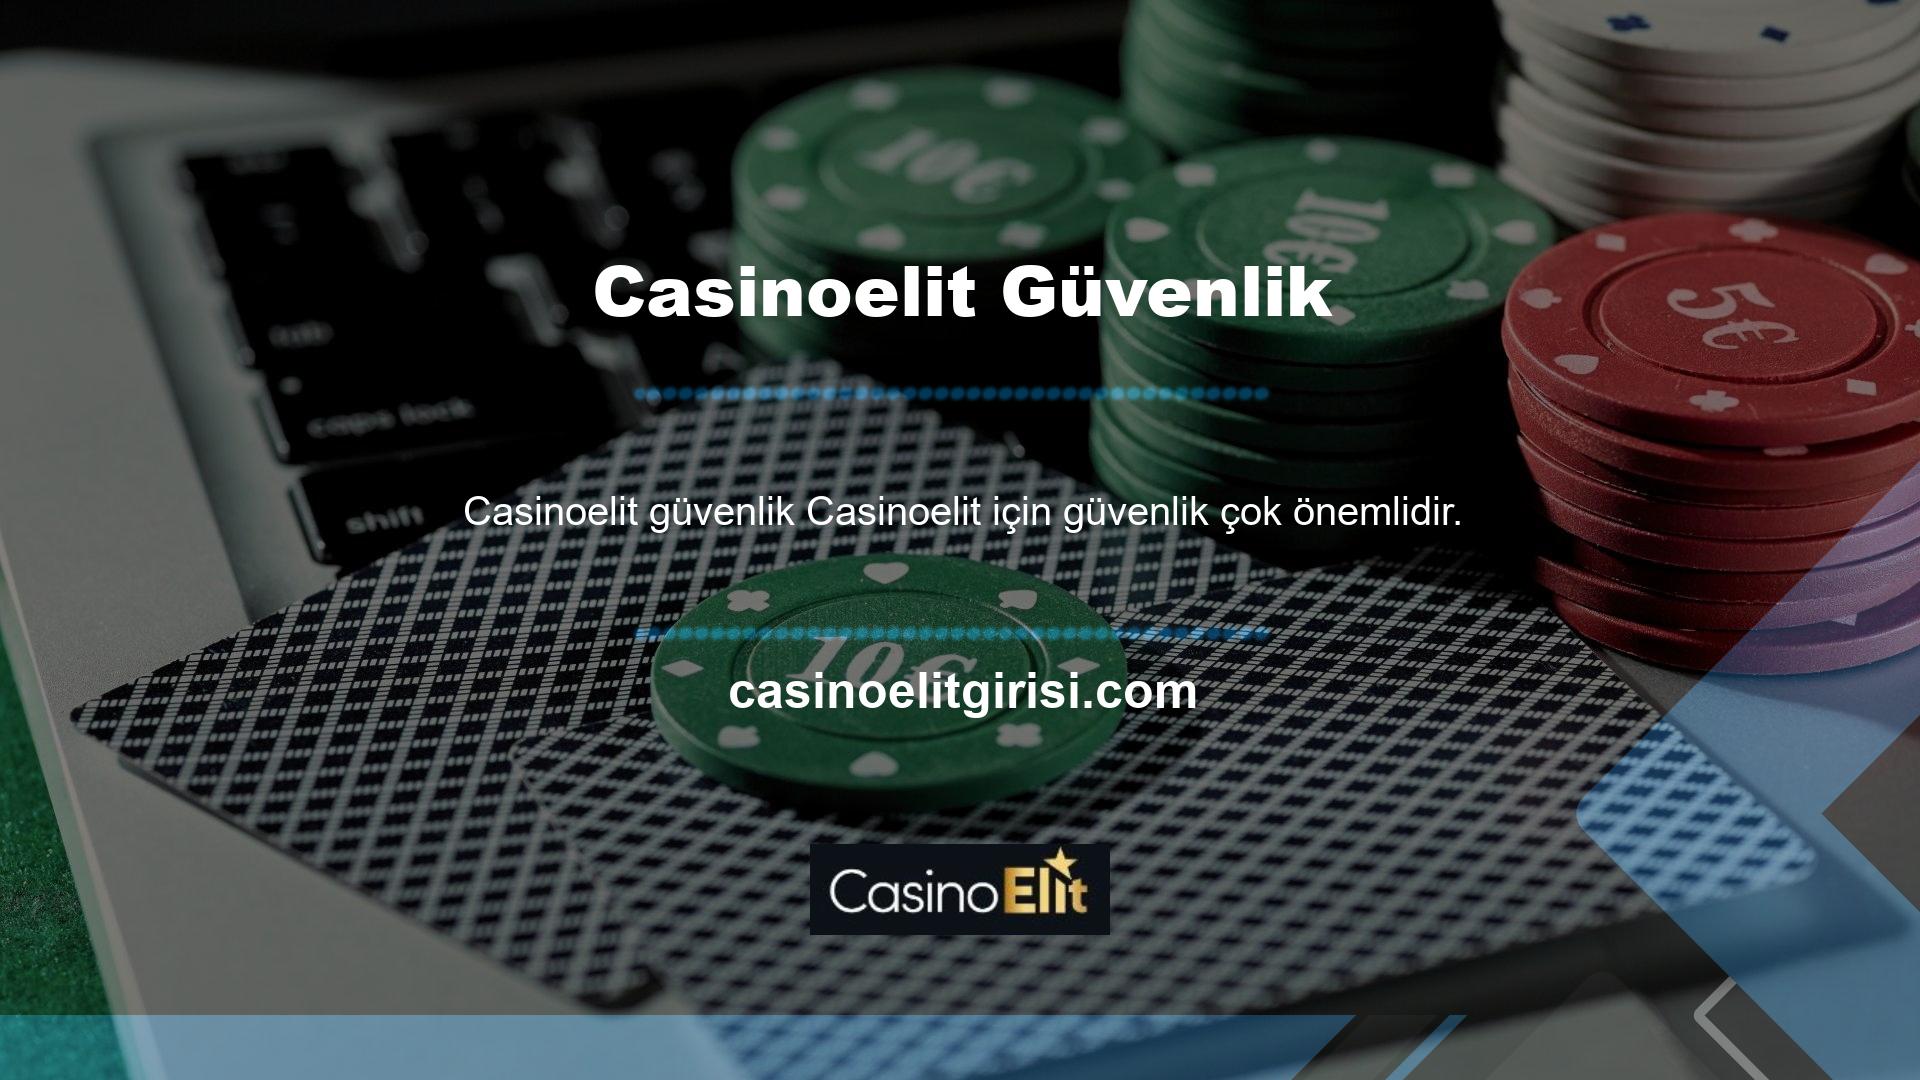 Casinoelit yönetimi her zaman kullanıcıları için rahat bir Casinoelit güvenlik ortamı yaratmayı istemiştir